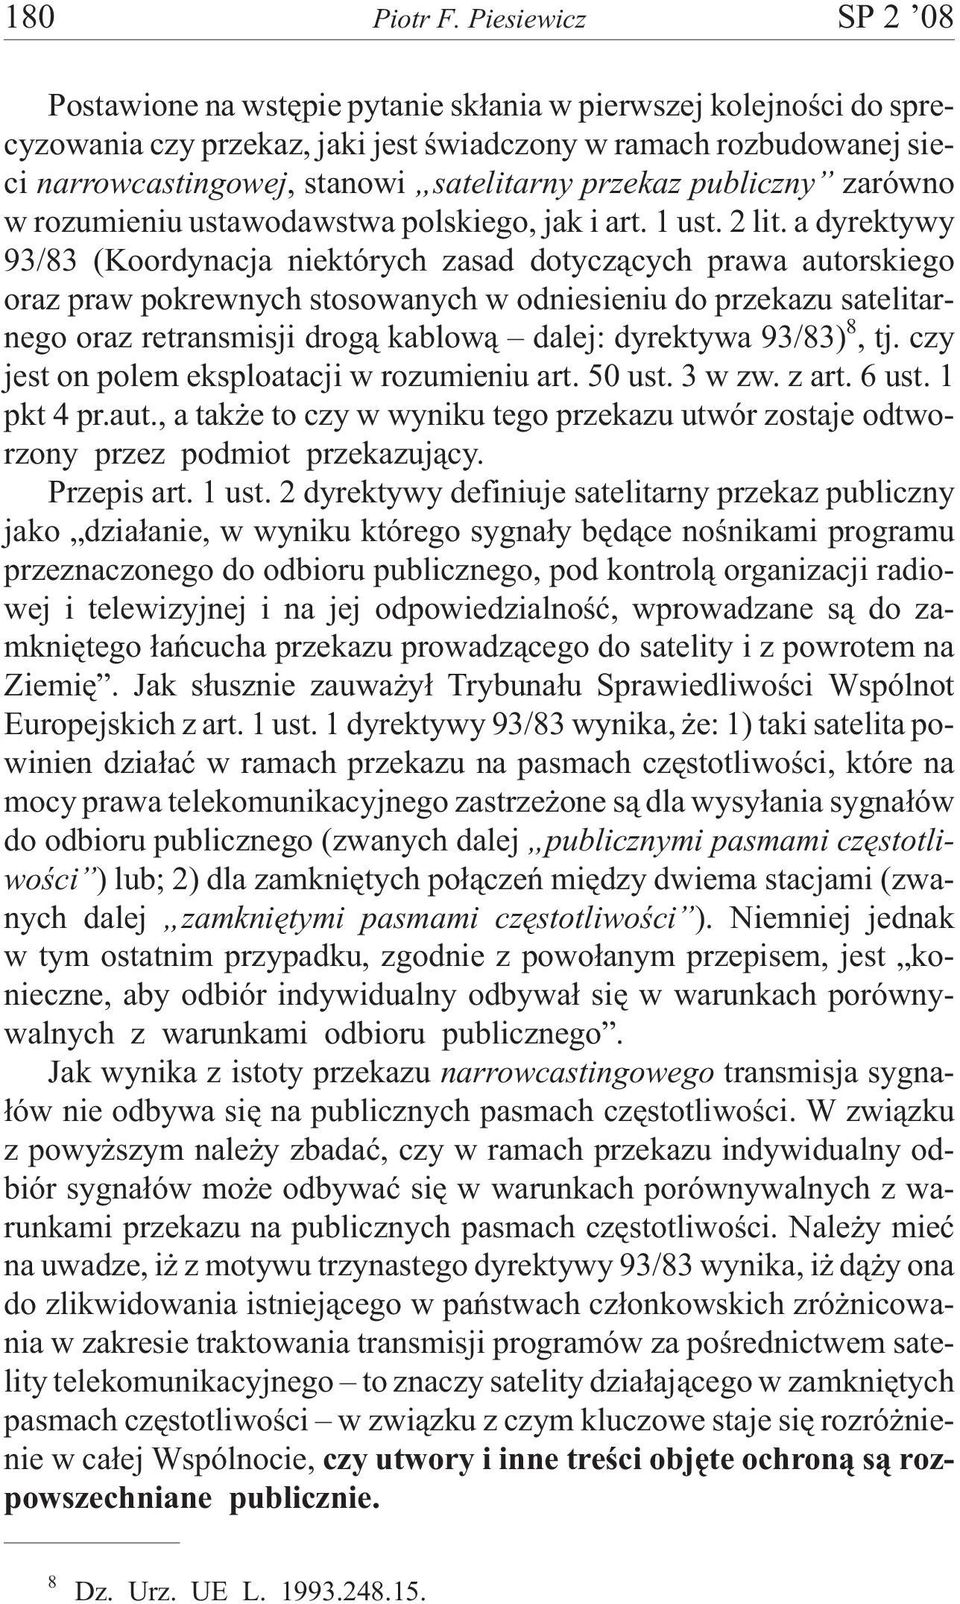 przekaz publiczny zarówno w rozumieniu ustawodawstwa polskiego, jak i art. 1 ust. 2 lit.